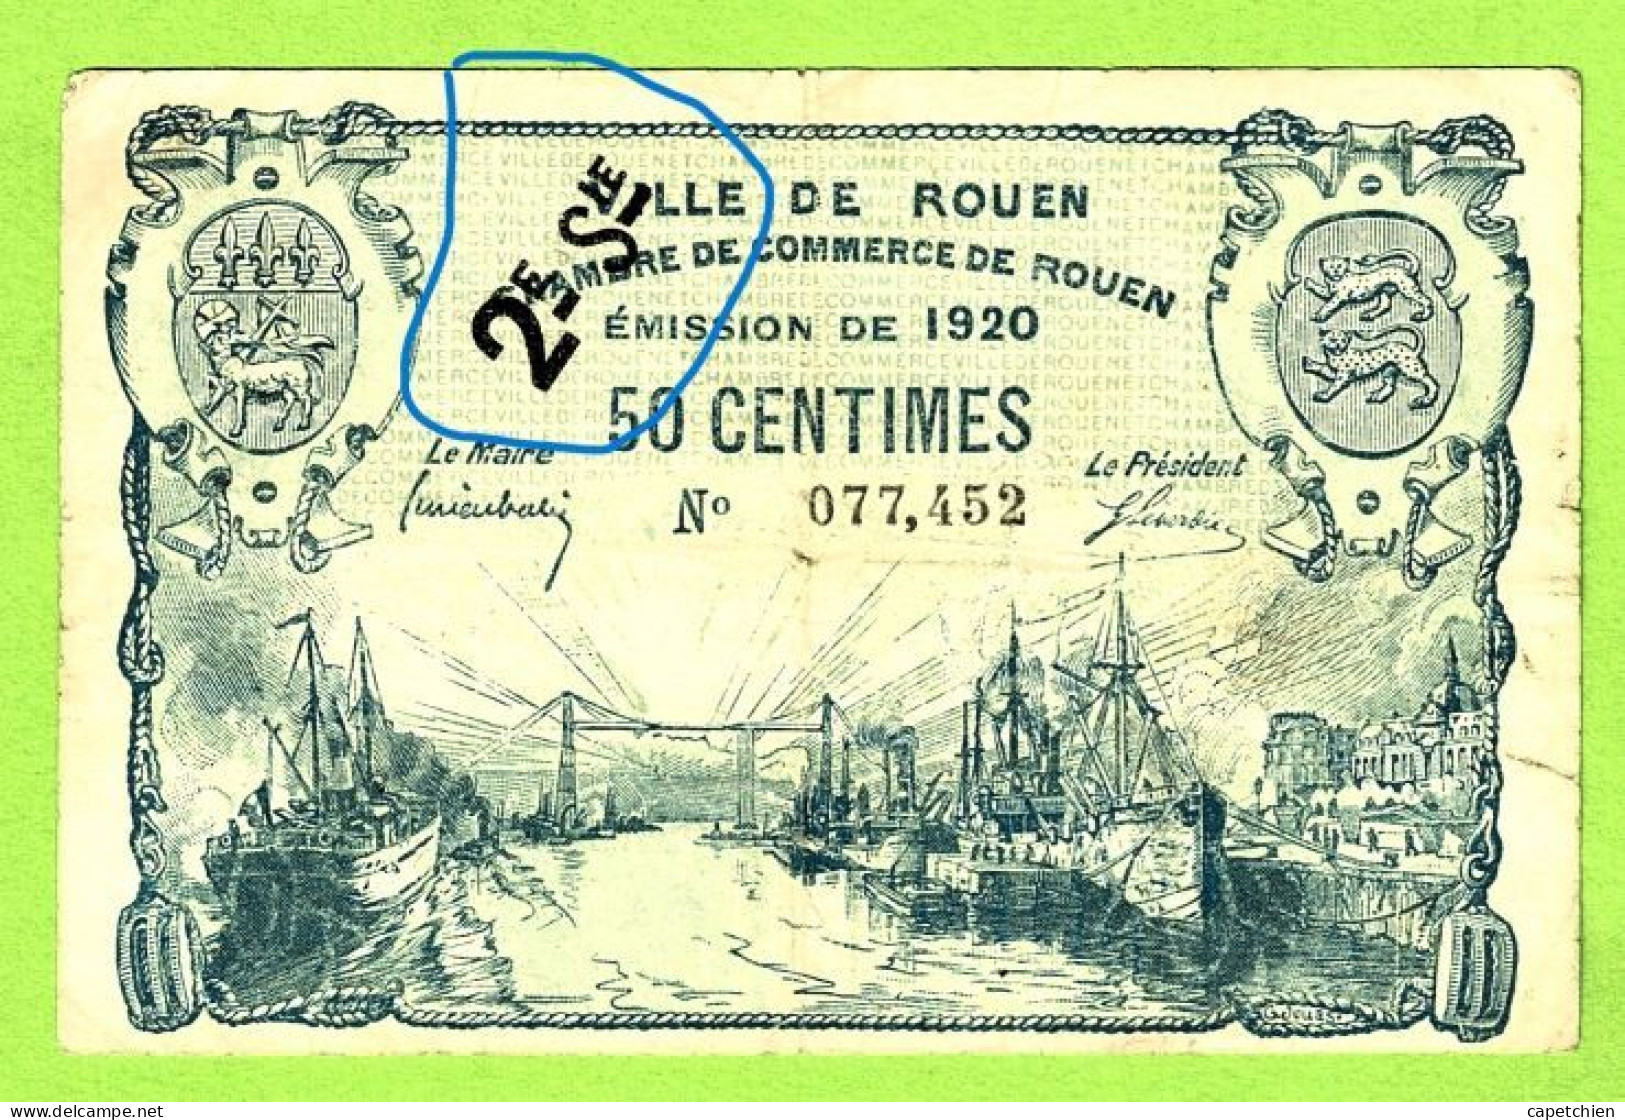 FRANCE / VILLE & CHAMBRE De COMMERCE De ROUEN / 50 CENTIMES  / EMISSION DE 1920 / SURCHARGE 2e Sie / N° 077452 - Cámara De Comercio